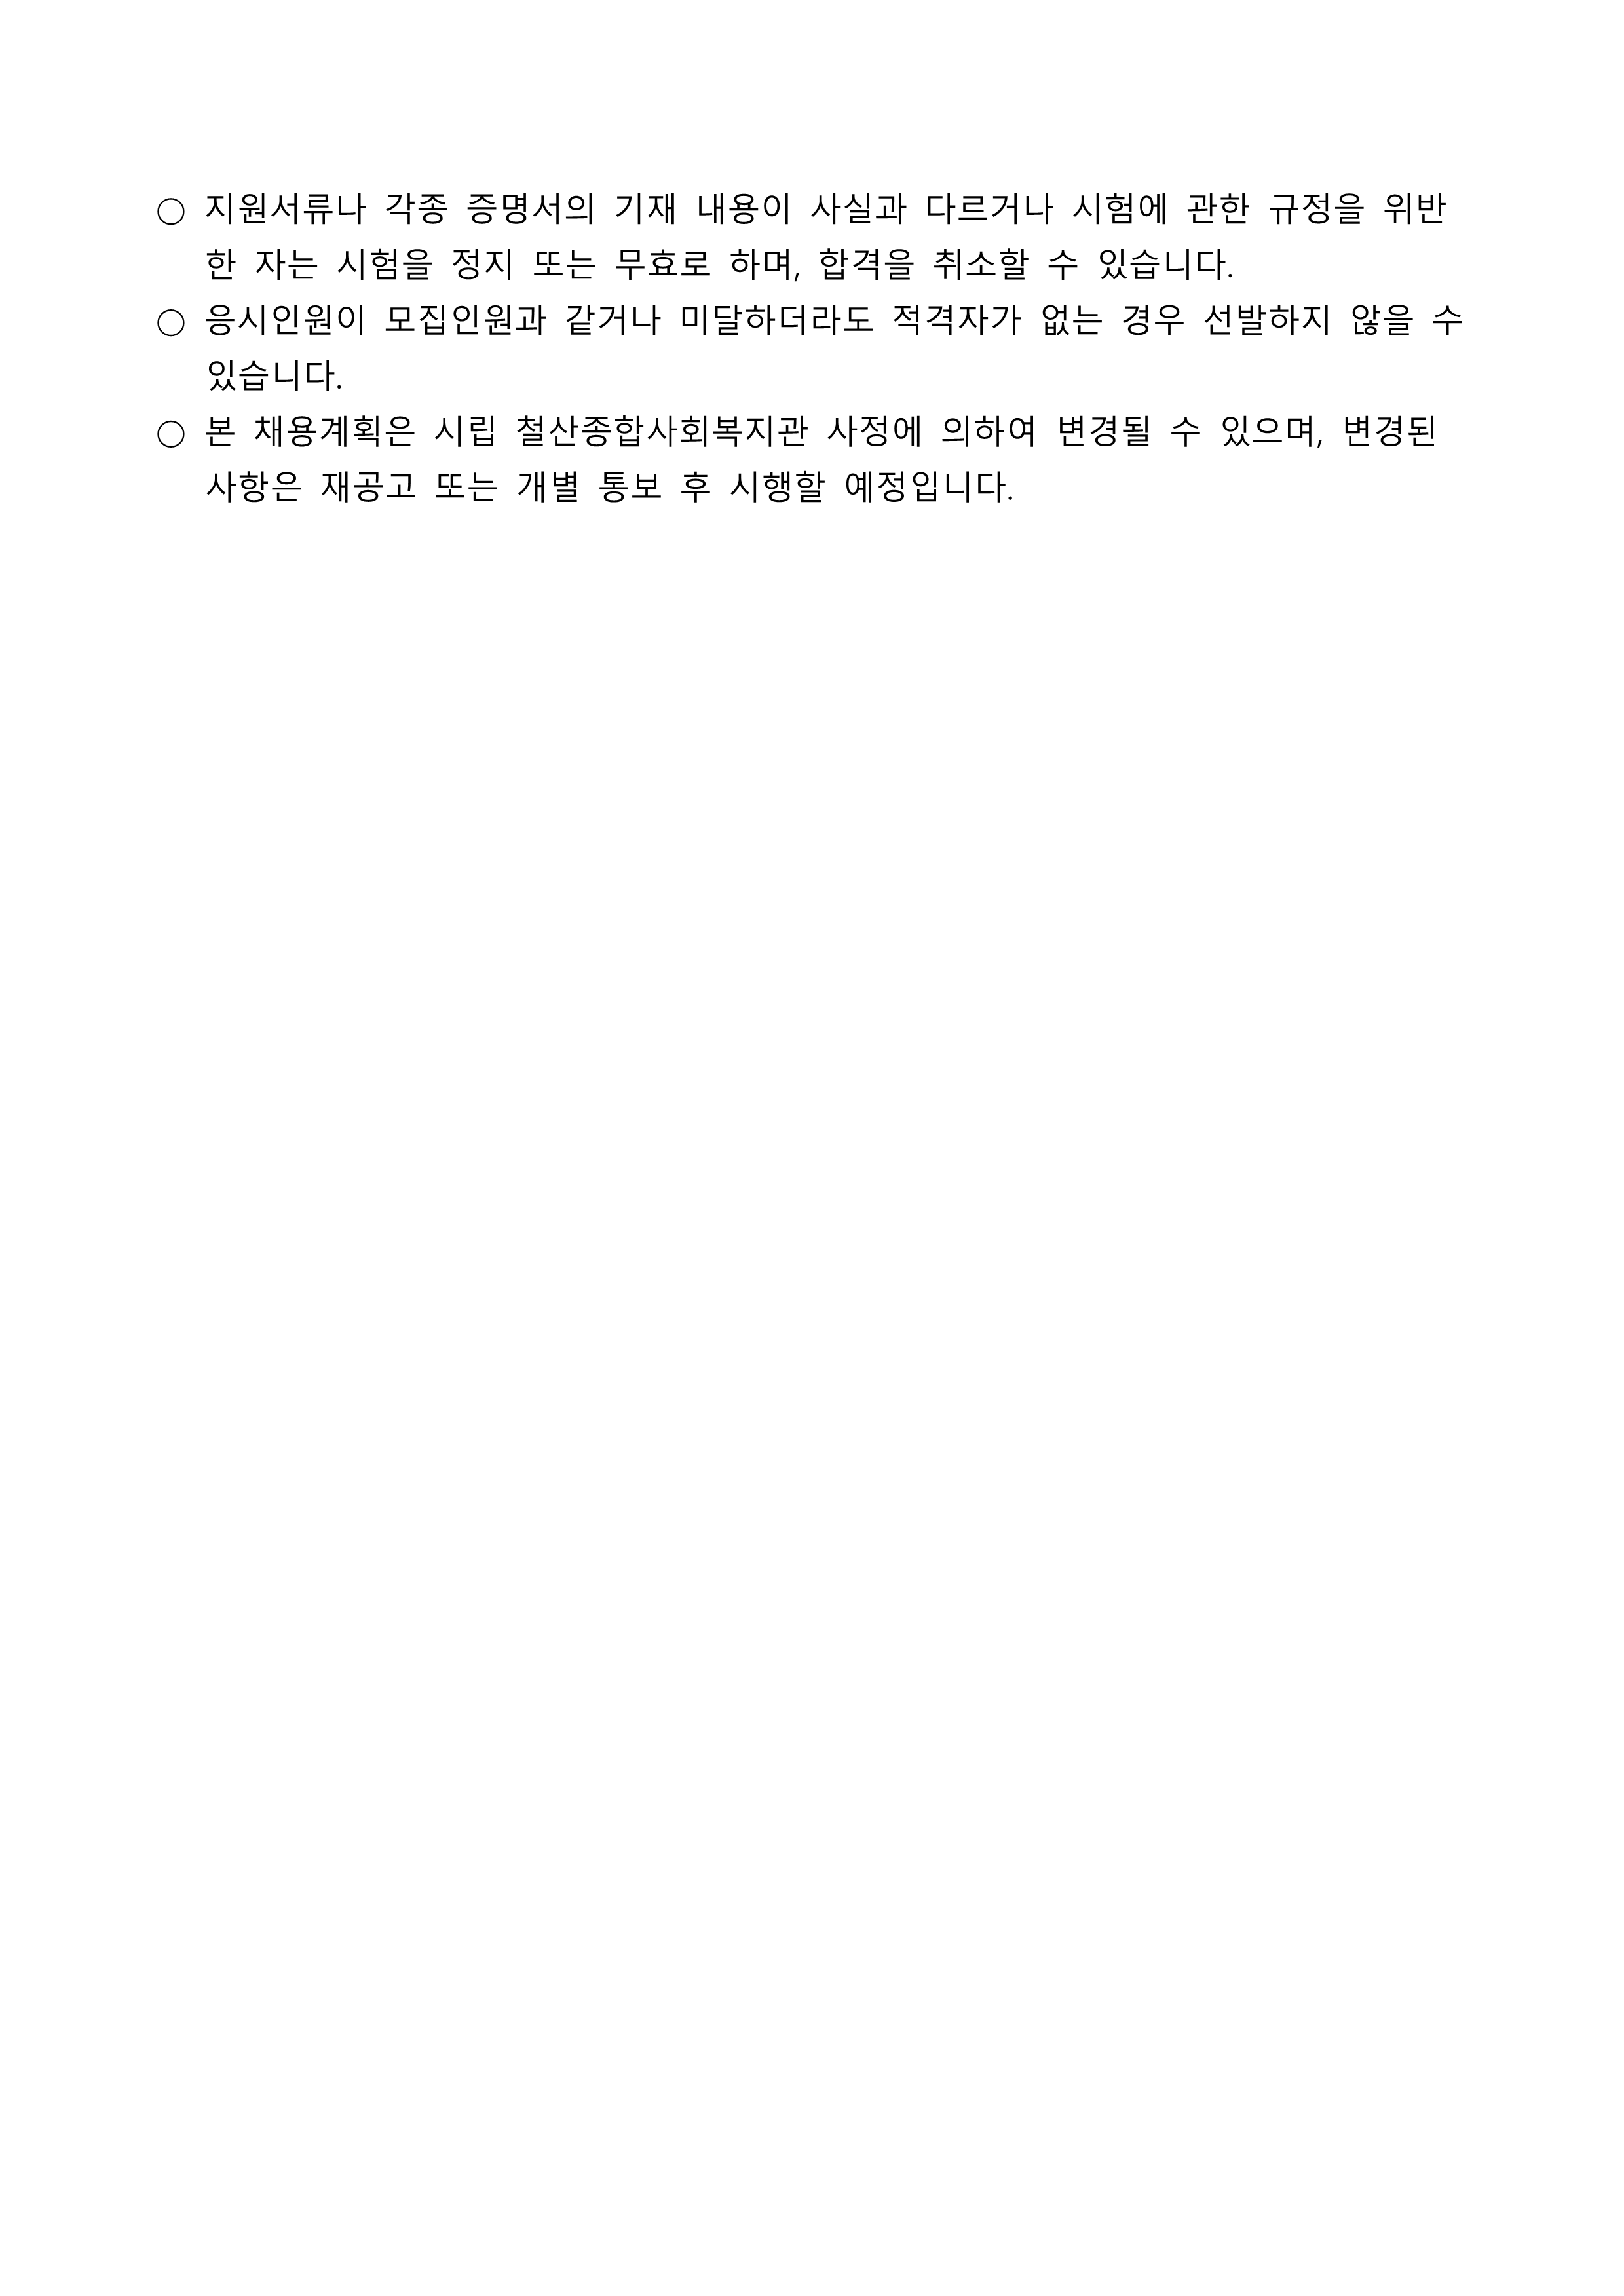 꿈나무아동발달센터 프리랜서 강사(언어치료사) 채용 공고_3.png